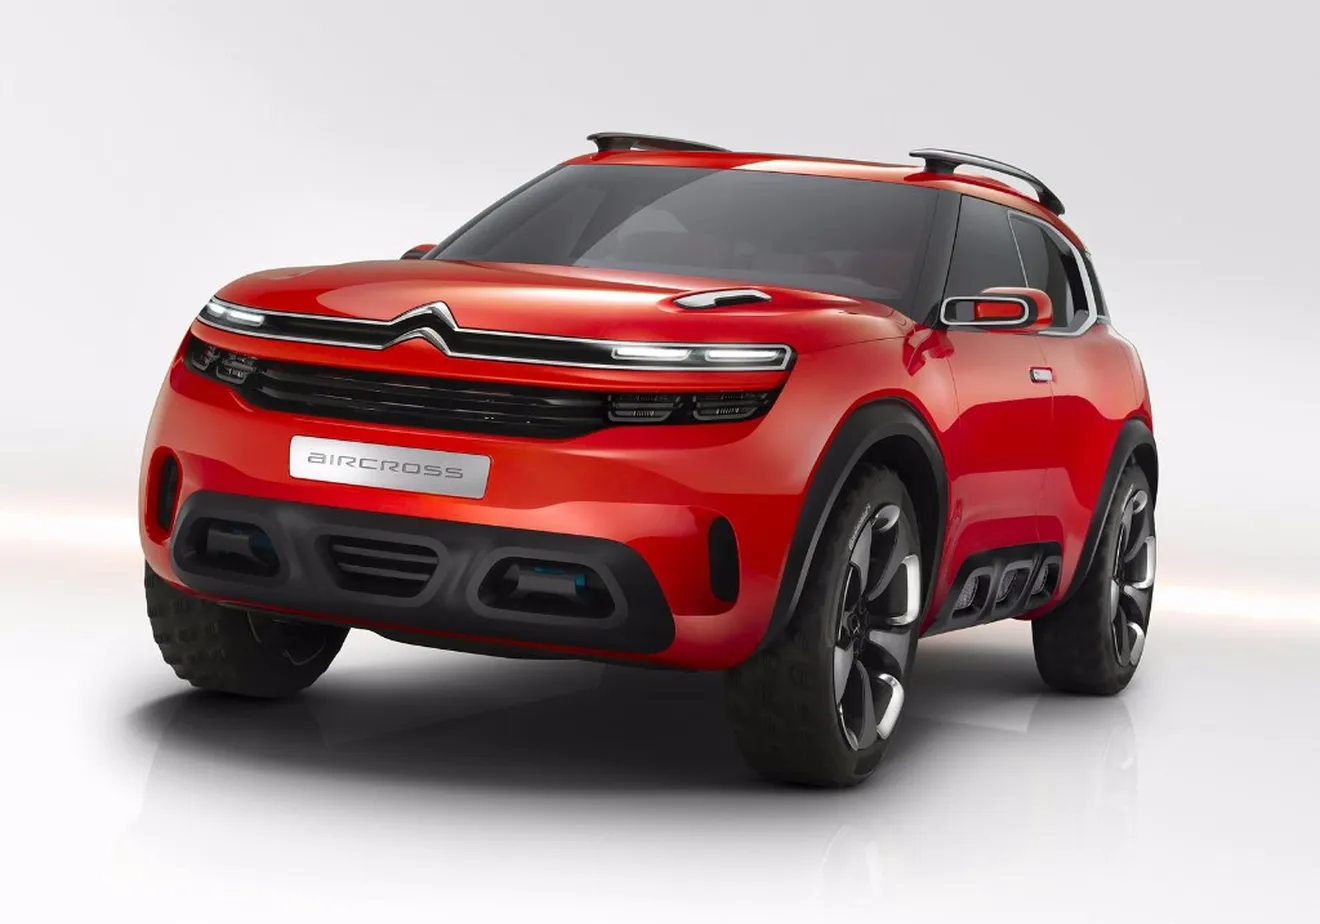 Citroën Aircross Concept: el espíritu del C4 Cactus en un 'crossover' de futuro